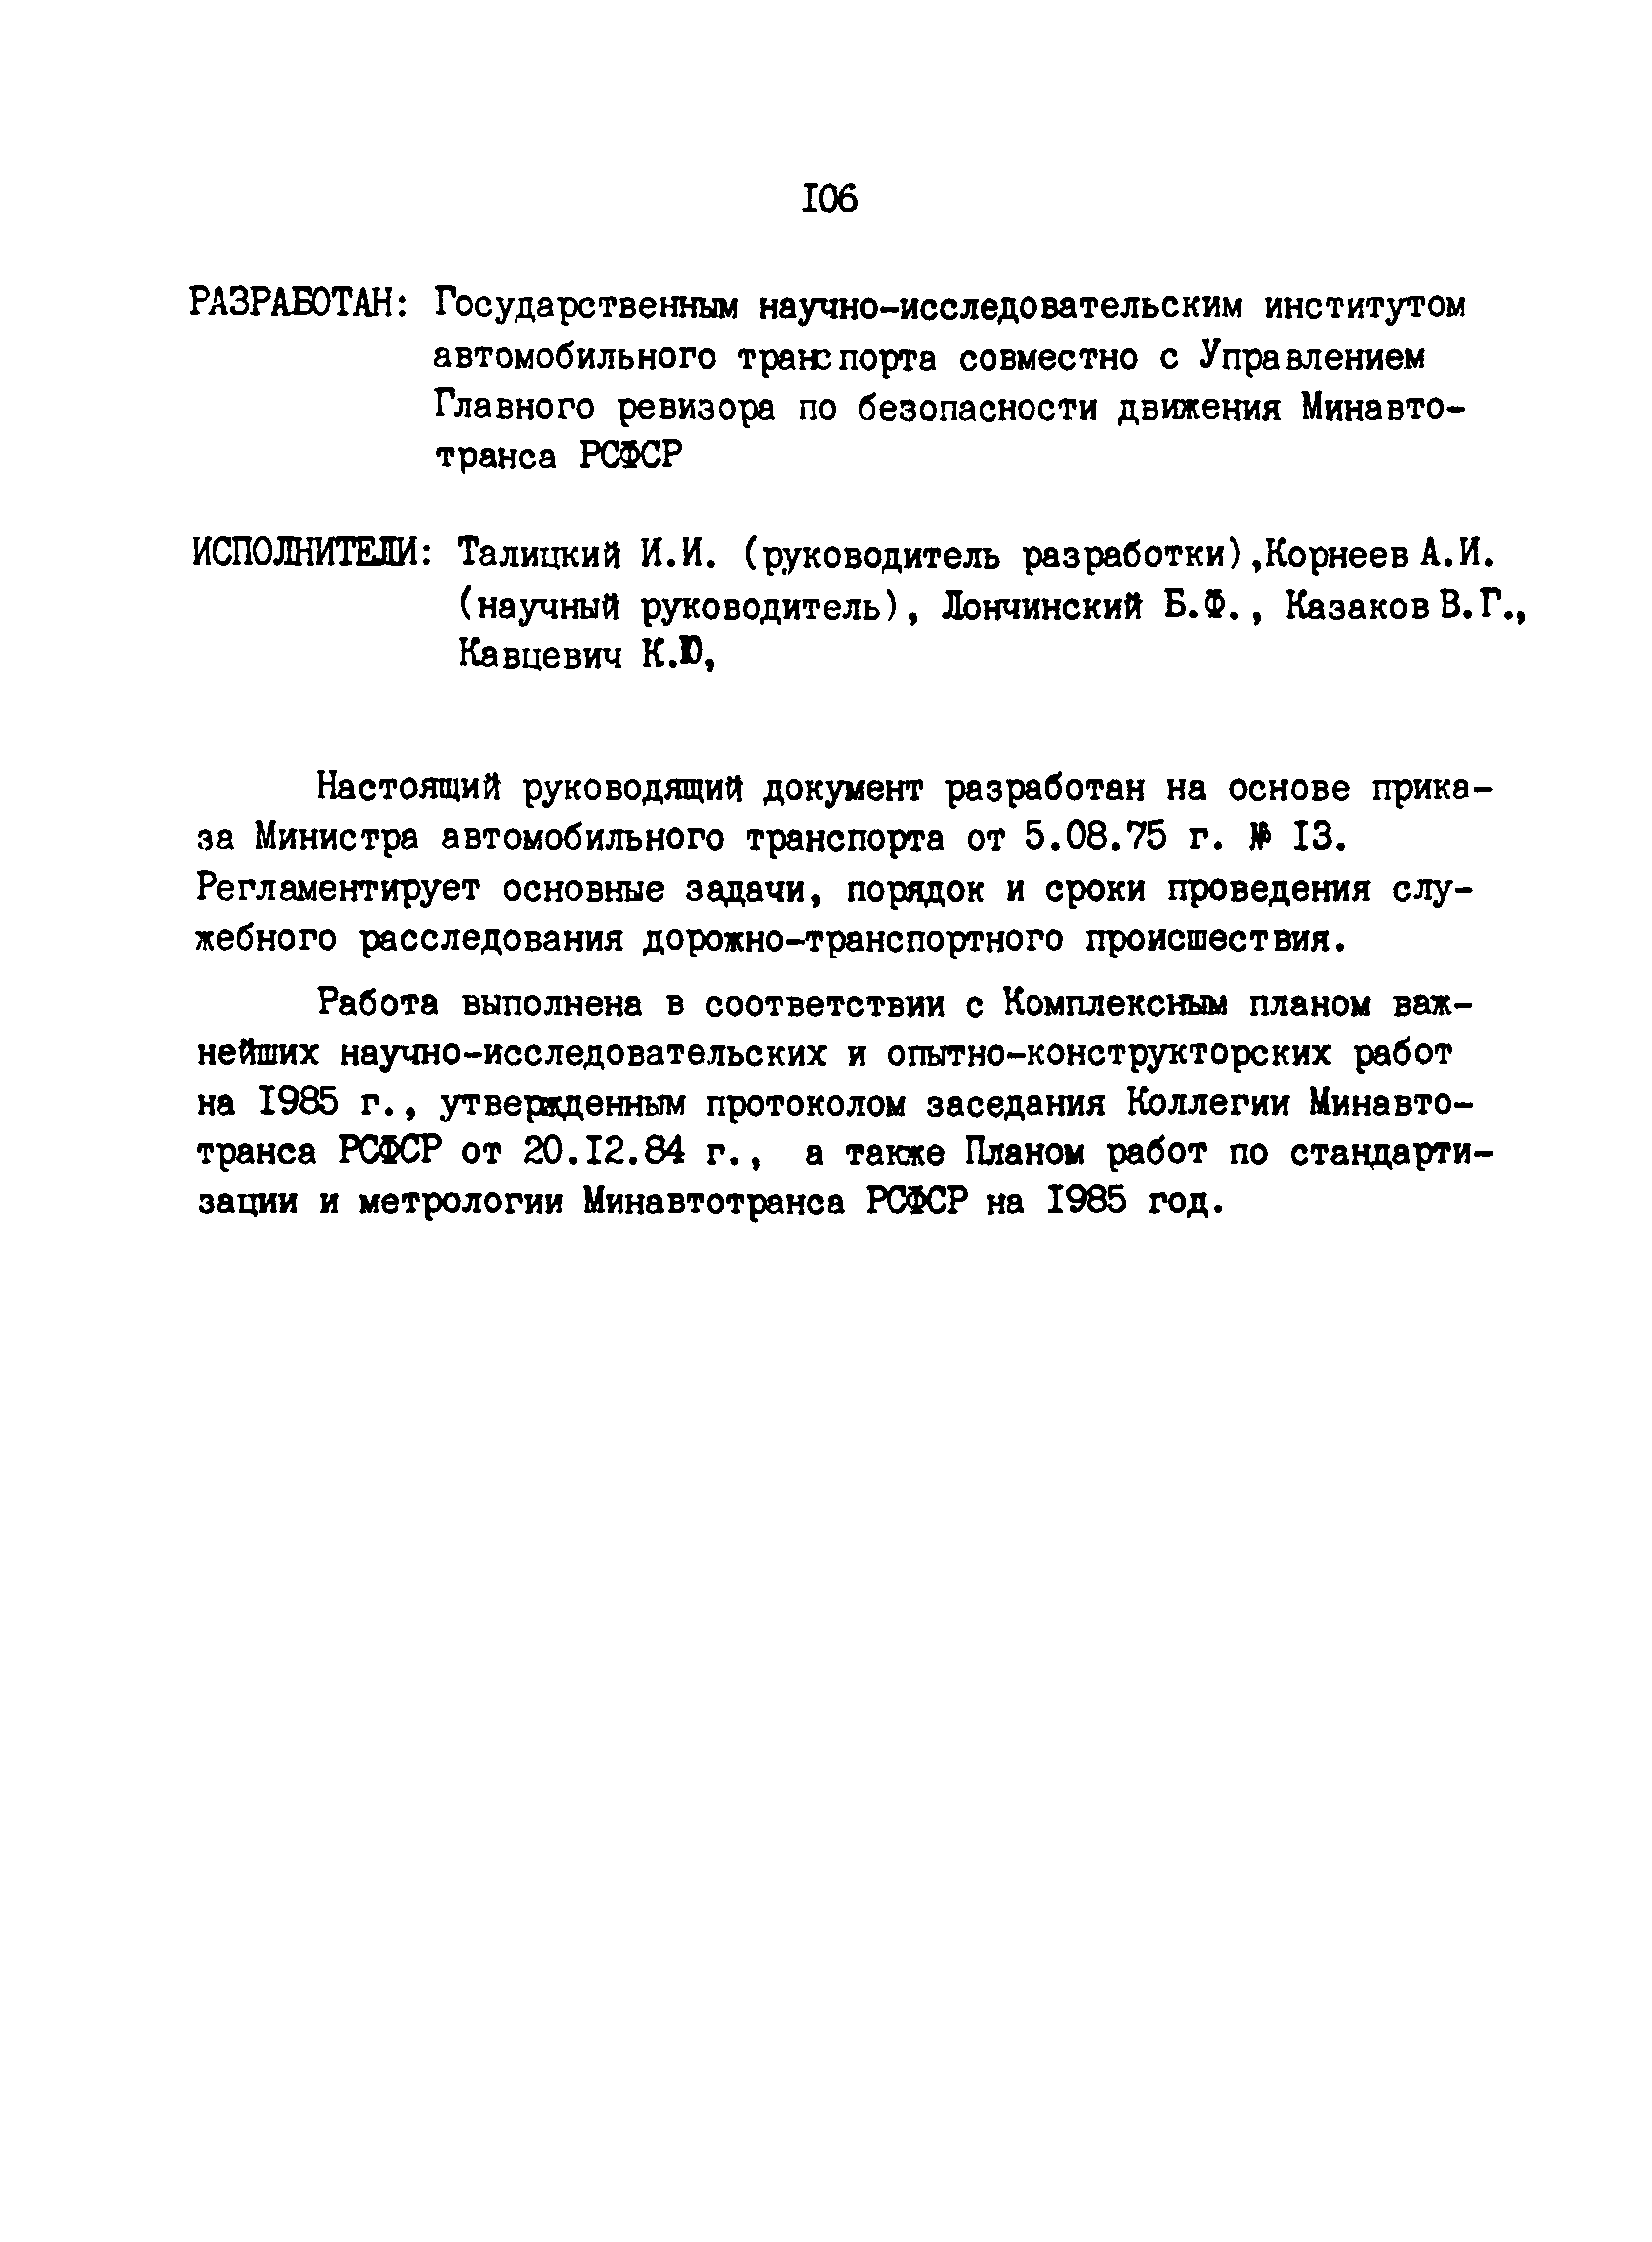 РД 200-РСФСР-12-0071-86-15